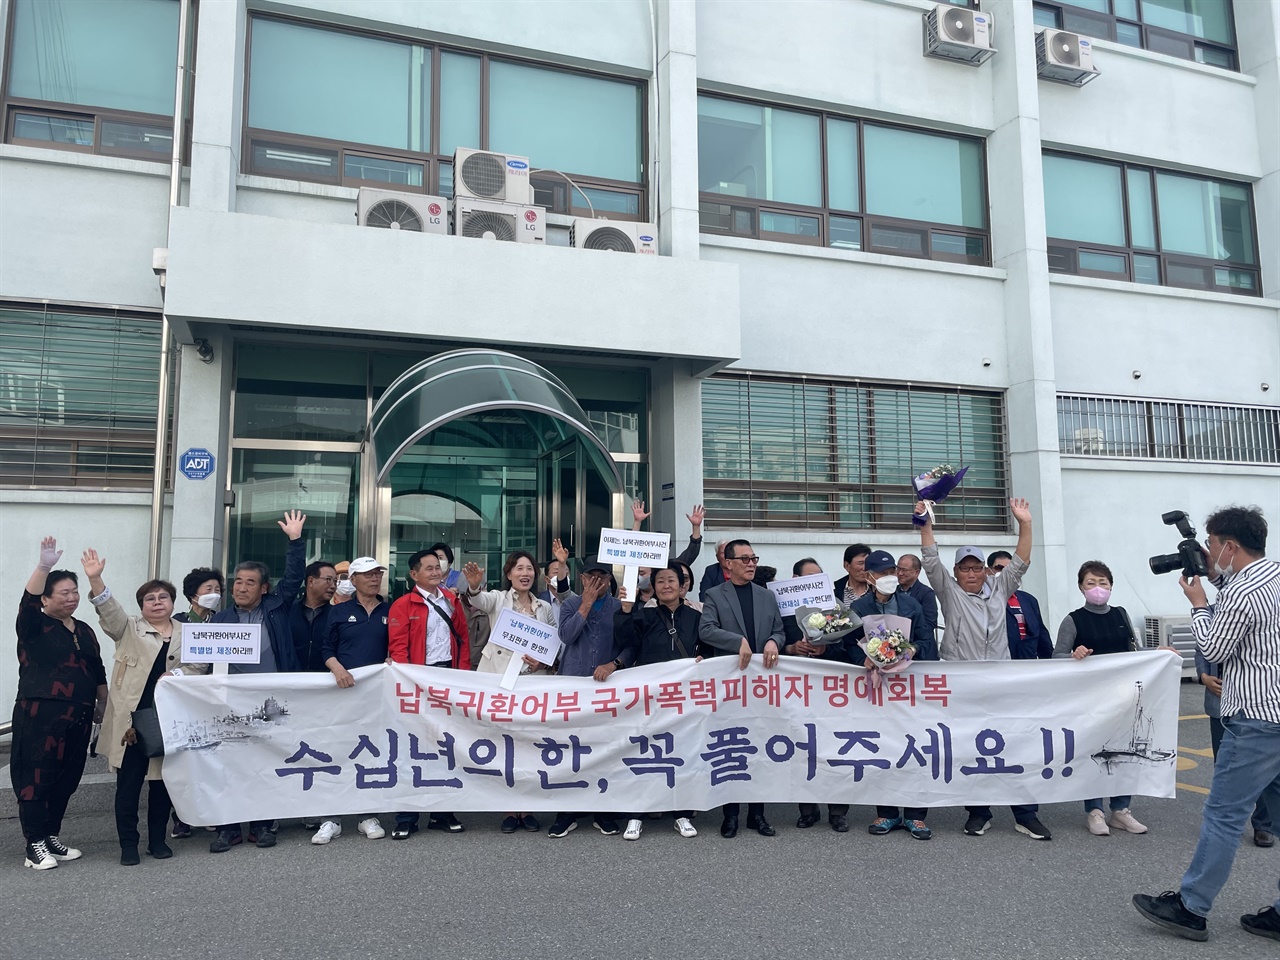 지난 5월 12일, 춘천지방법원에서 무죄선고를 받고 기뻐하는 피해자 및 가족들